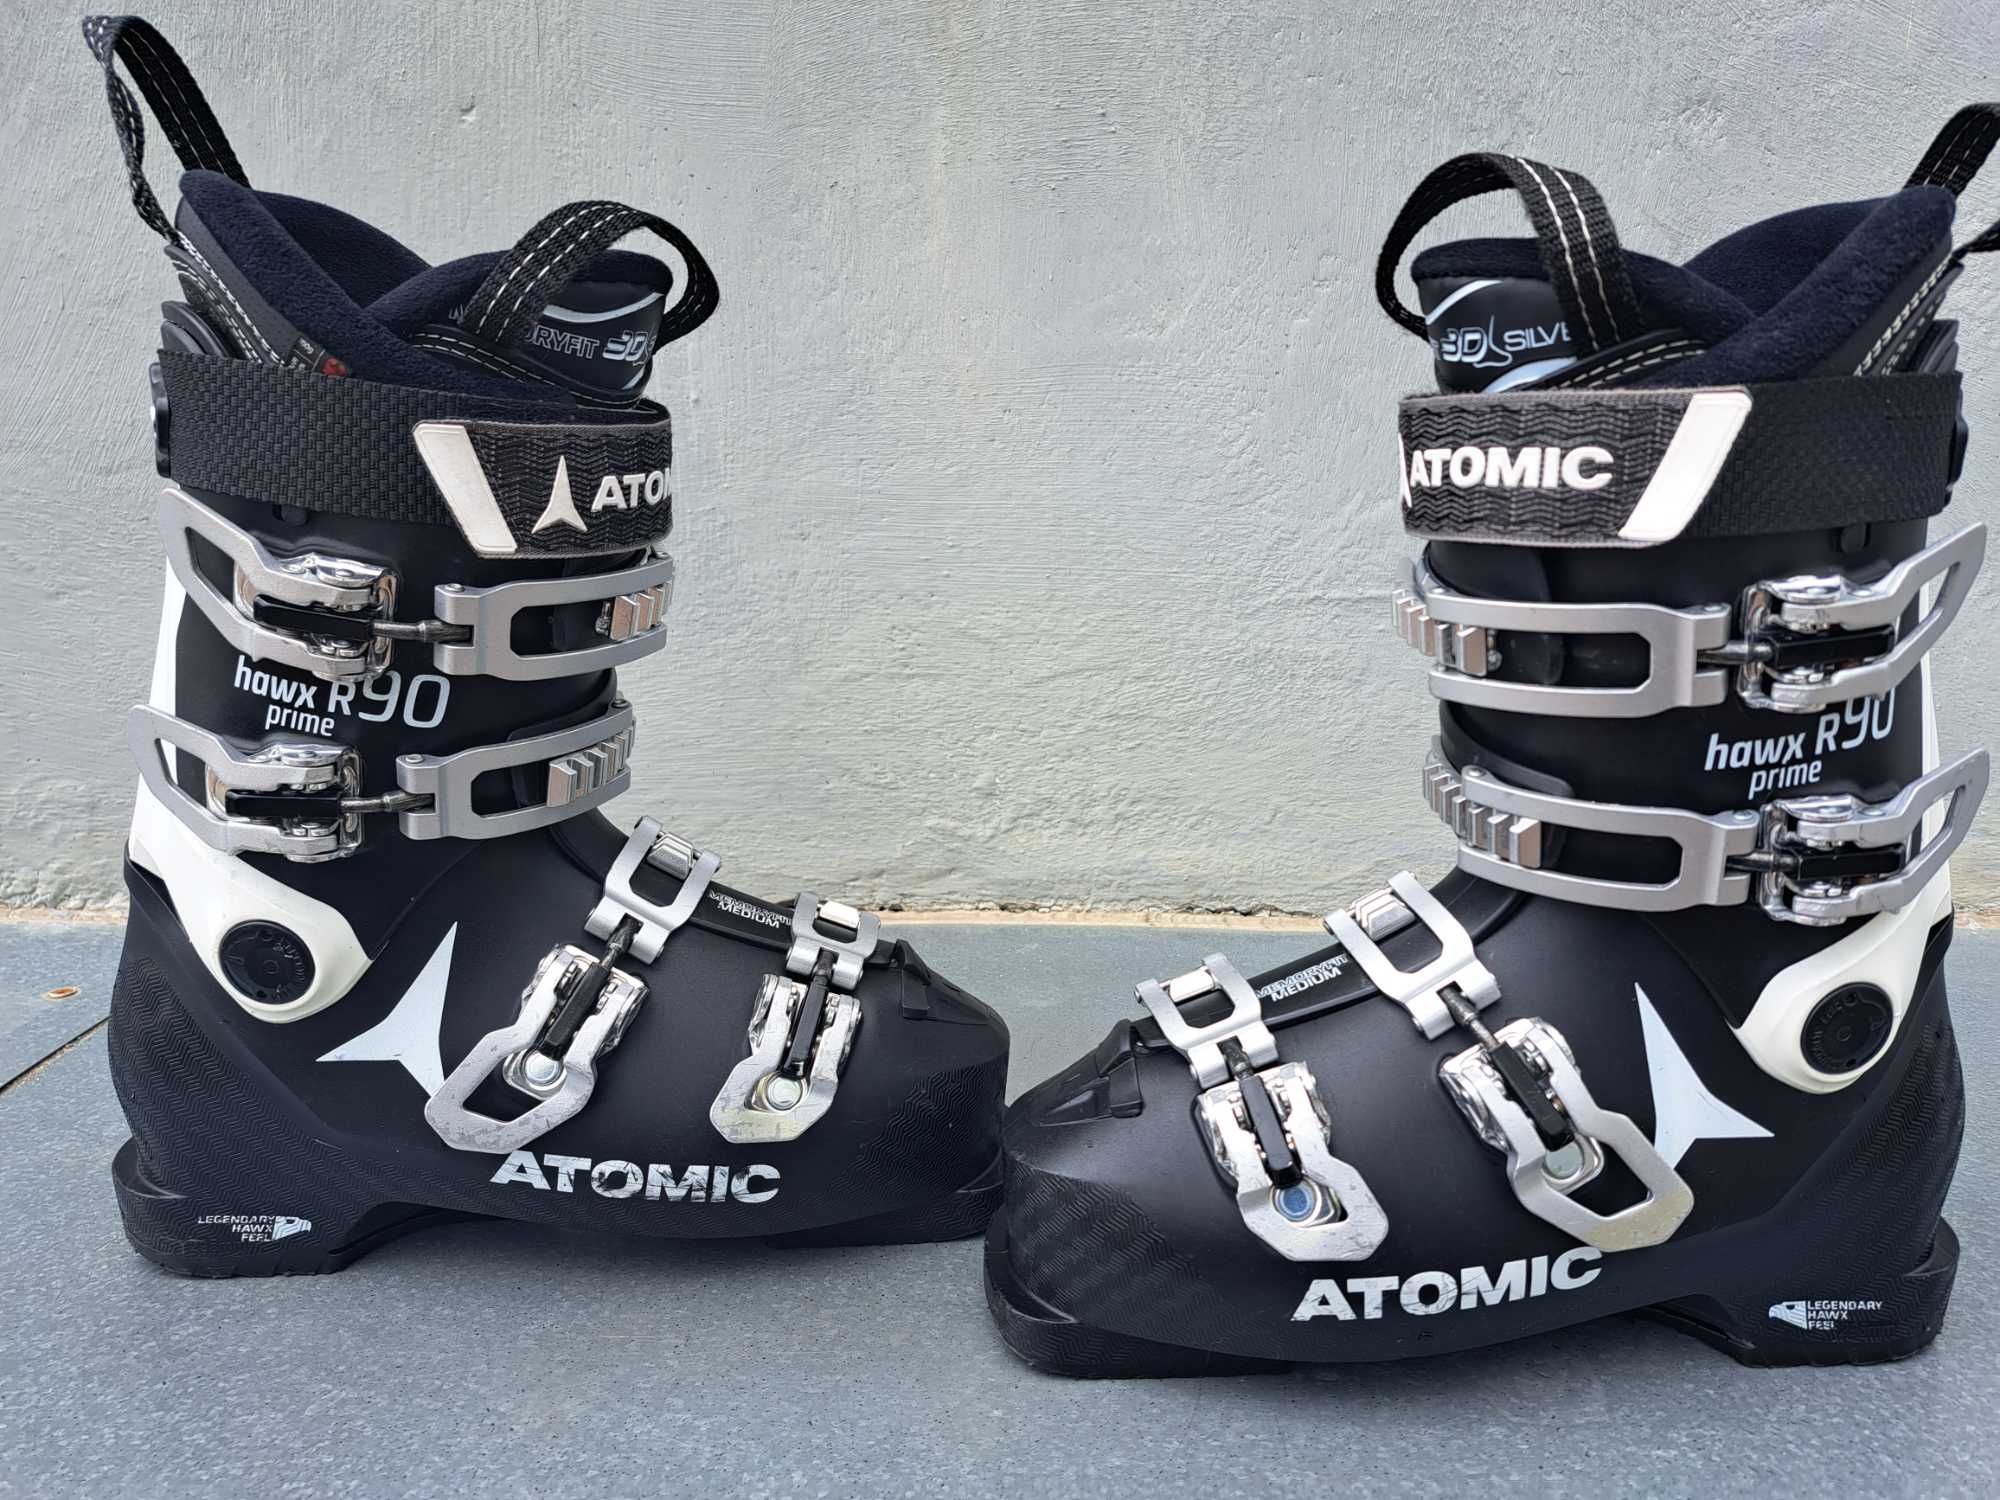 buty narciarskie damskie Atomic Hawx R90 Prime rozmiar 39 - 40